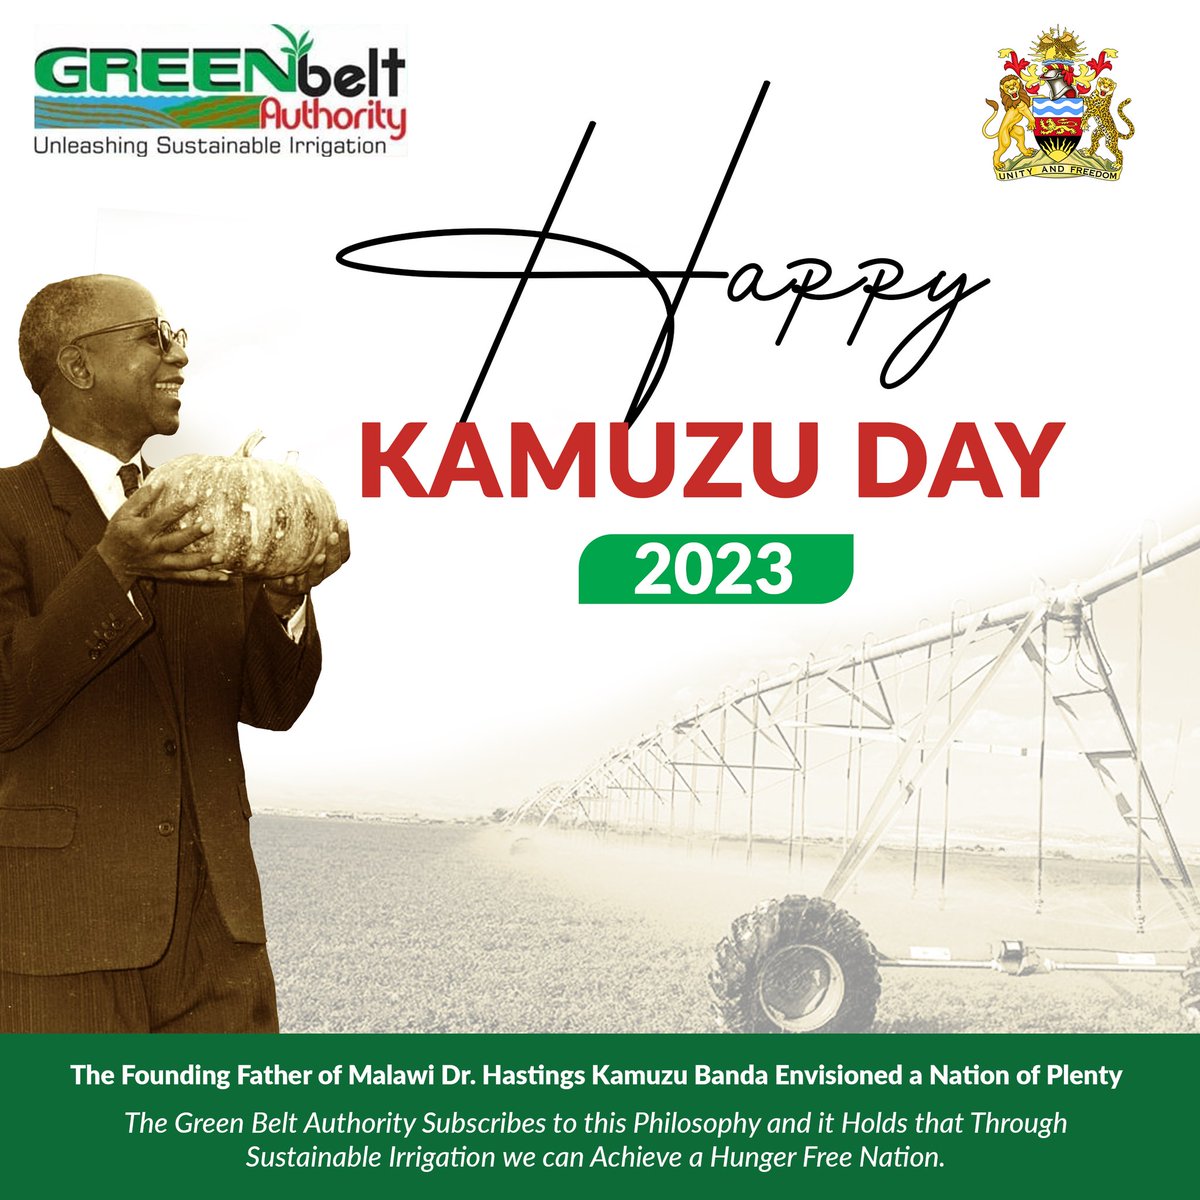 #kamuzuday2023 #malawigovernment #ministryofagriculturemalawi #sustainableirrigation